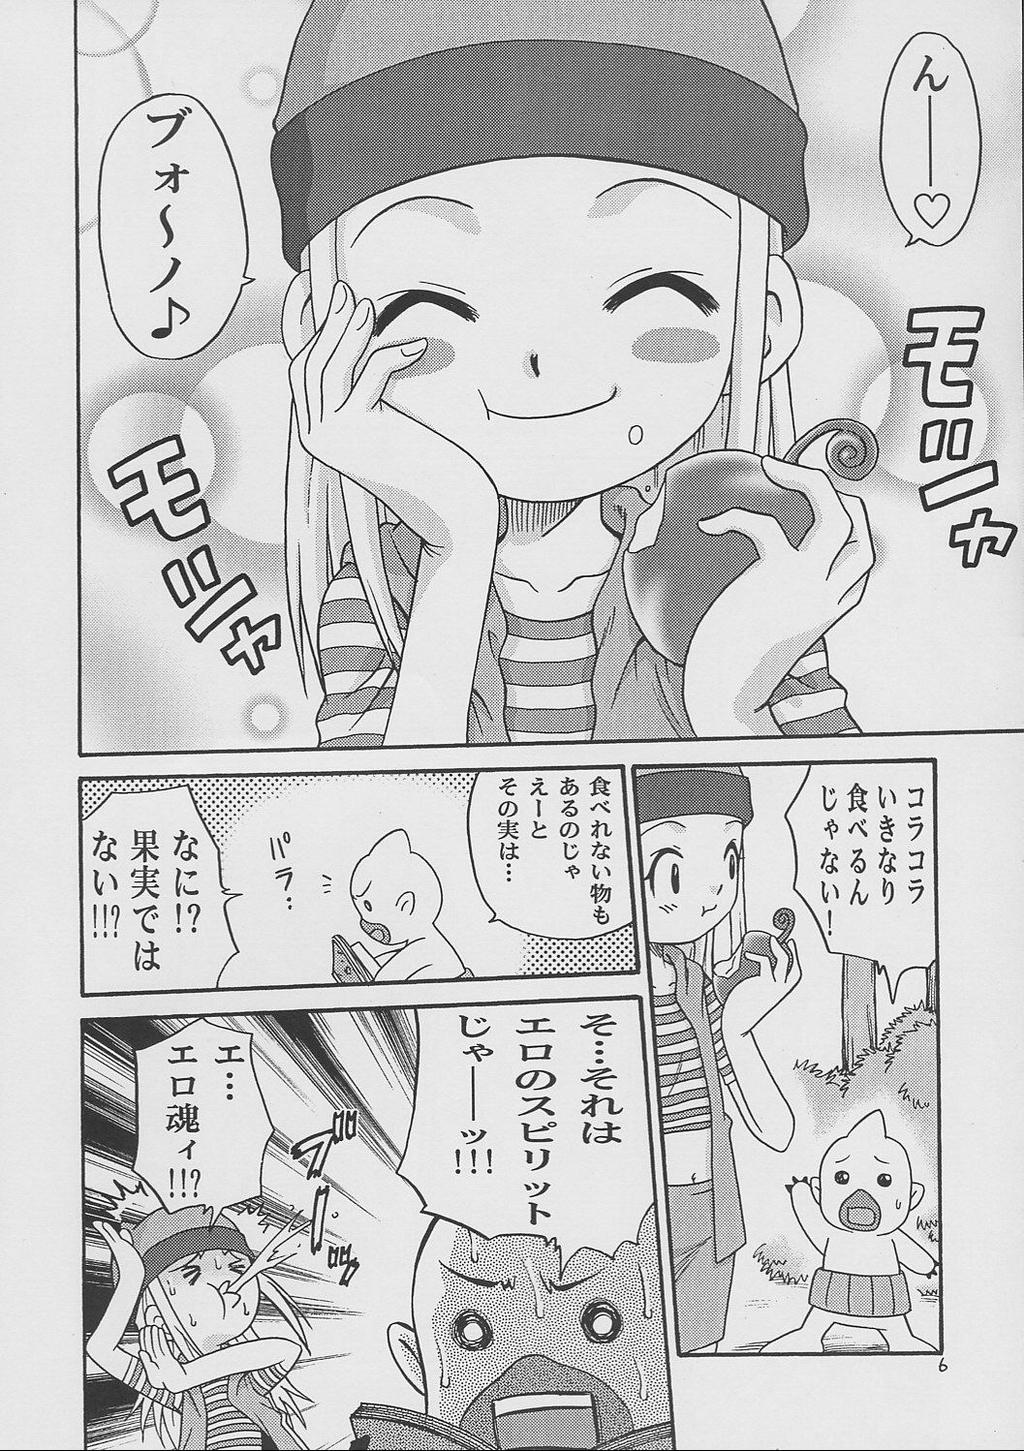 Girlsfucking Izumin - Digimon frontier Dutch - Page 5